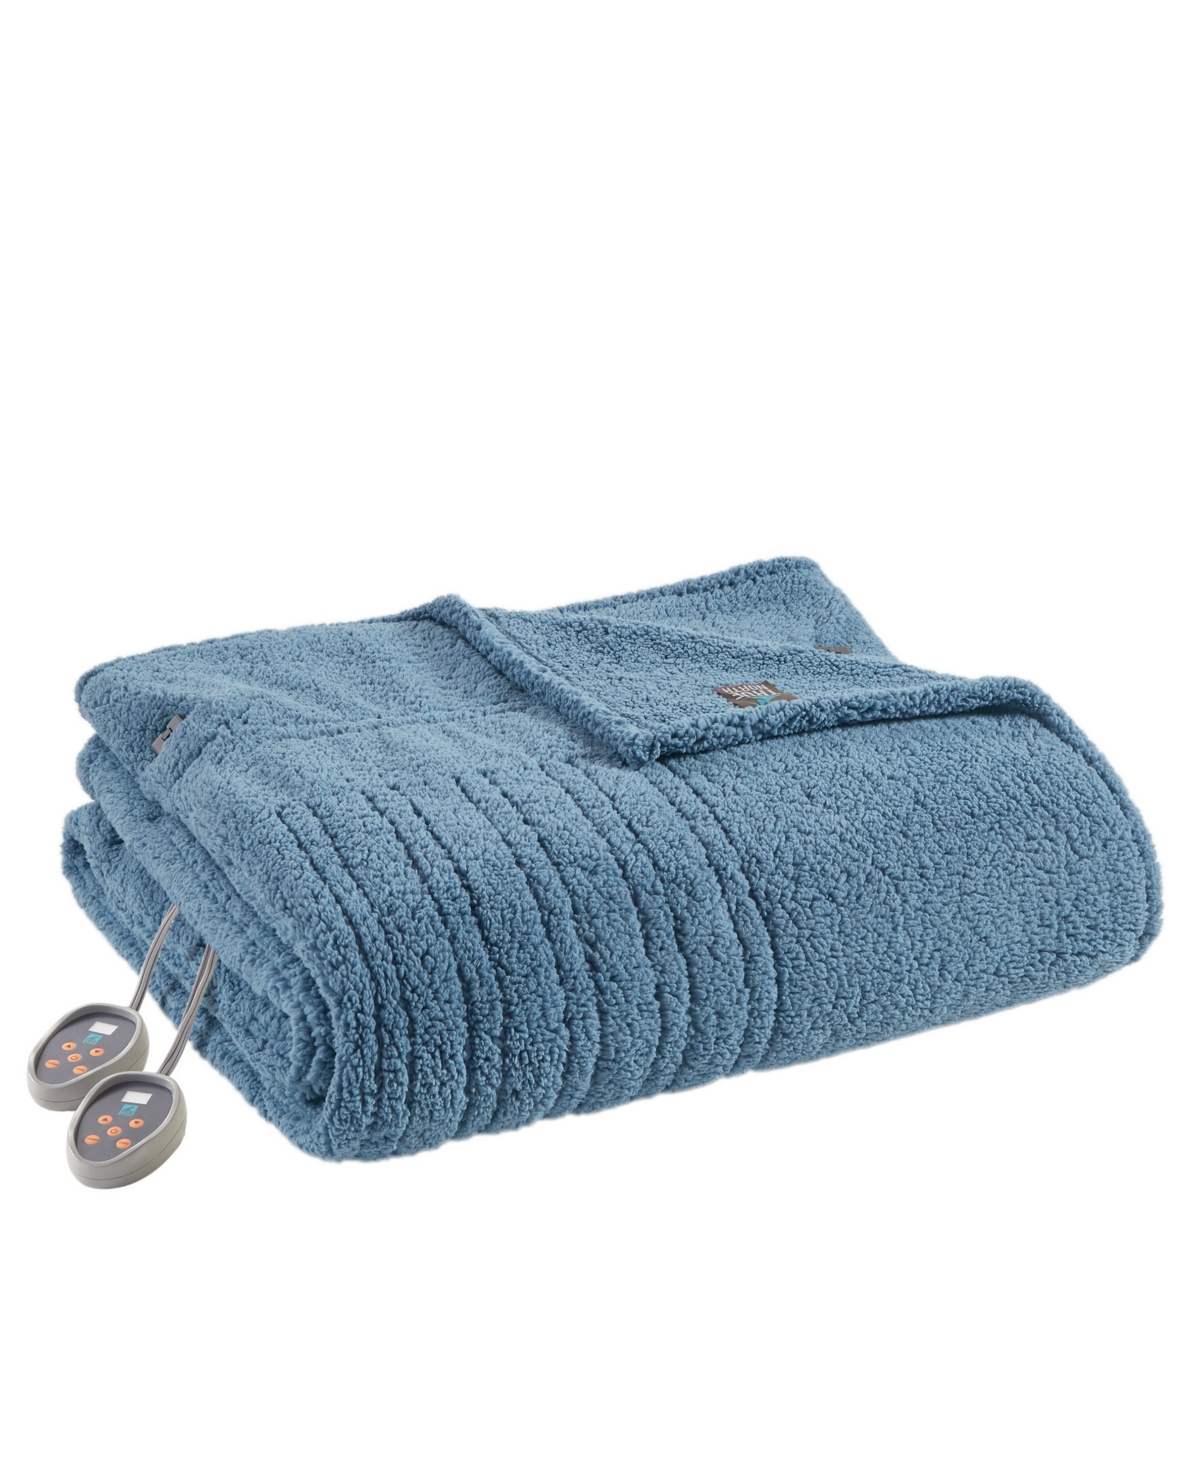 Sleep Philosophy Sherpa Heated Blanket, Twin In Blue